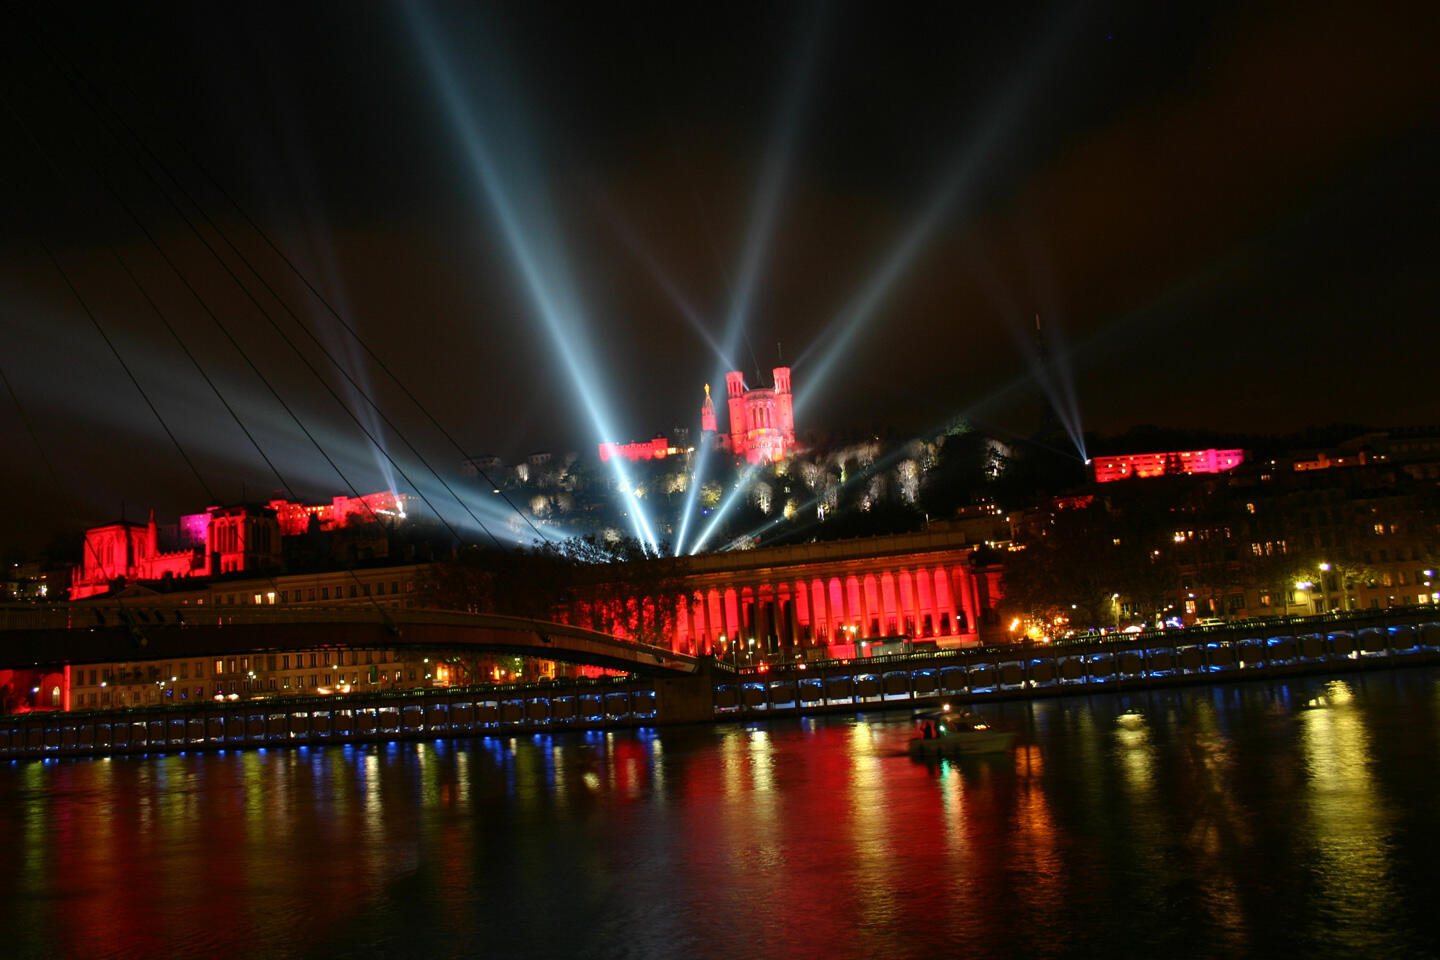 Vista nocturna del Festival de Luces en Lyon, con focos iluminando la Basílica de Fourvière y el palacio de justicia histórico en rojo, reflejándose en el río Saona.